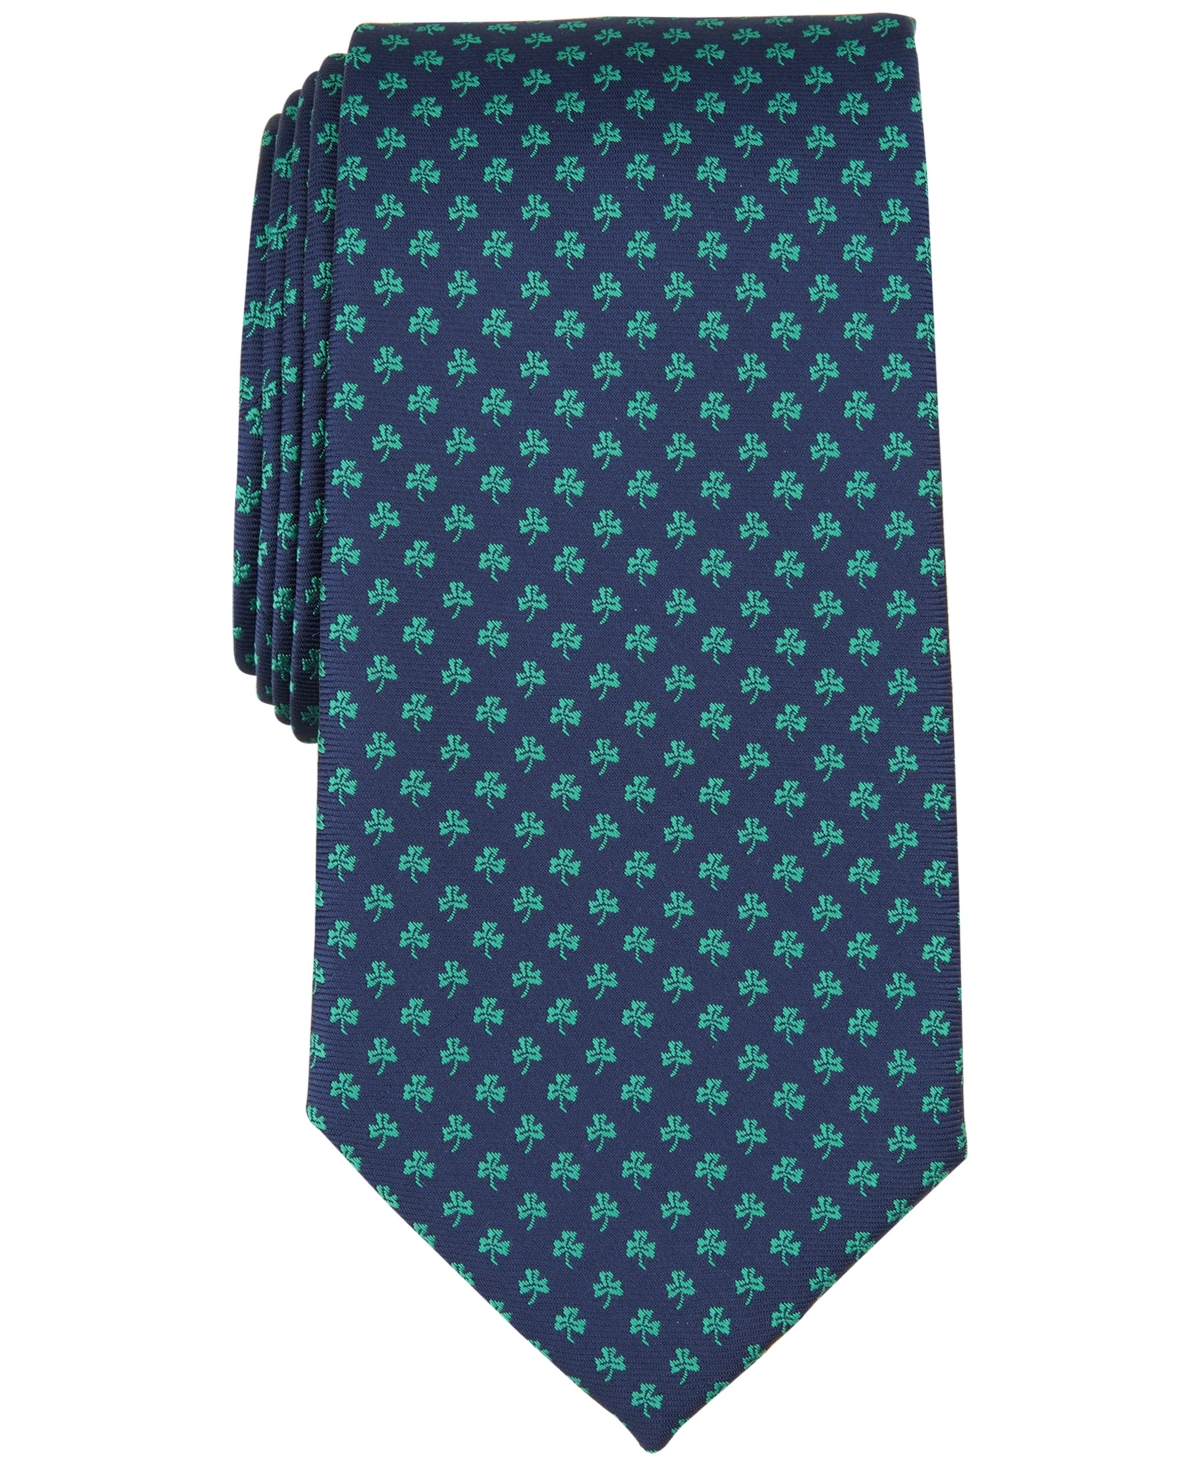 Men's Shamrock Tie, Created for Macy's - Navy